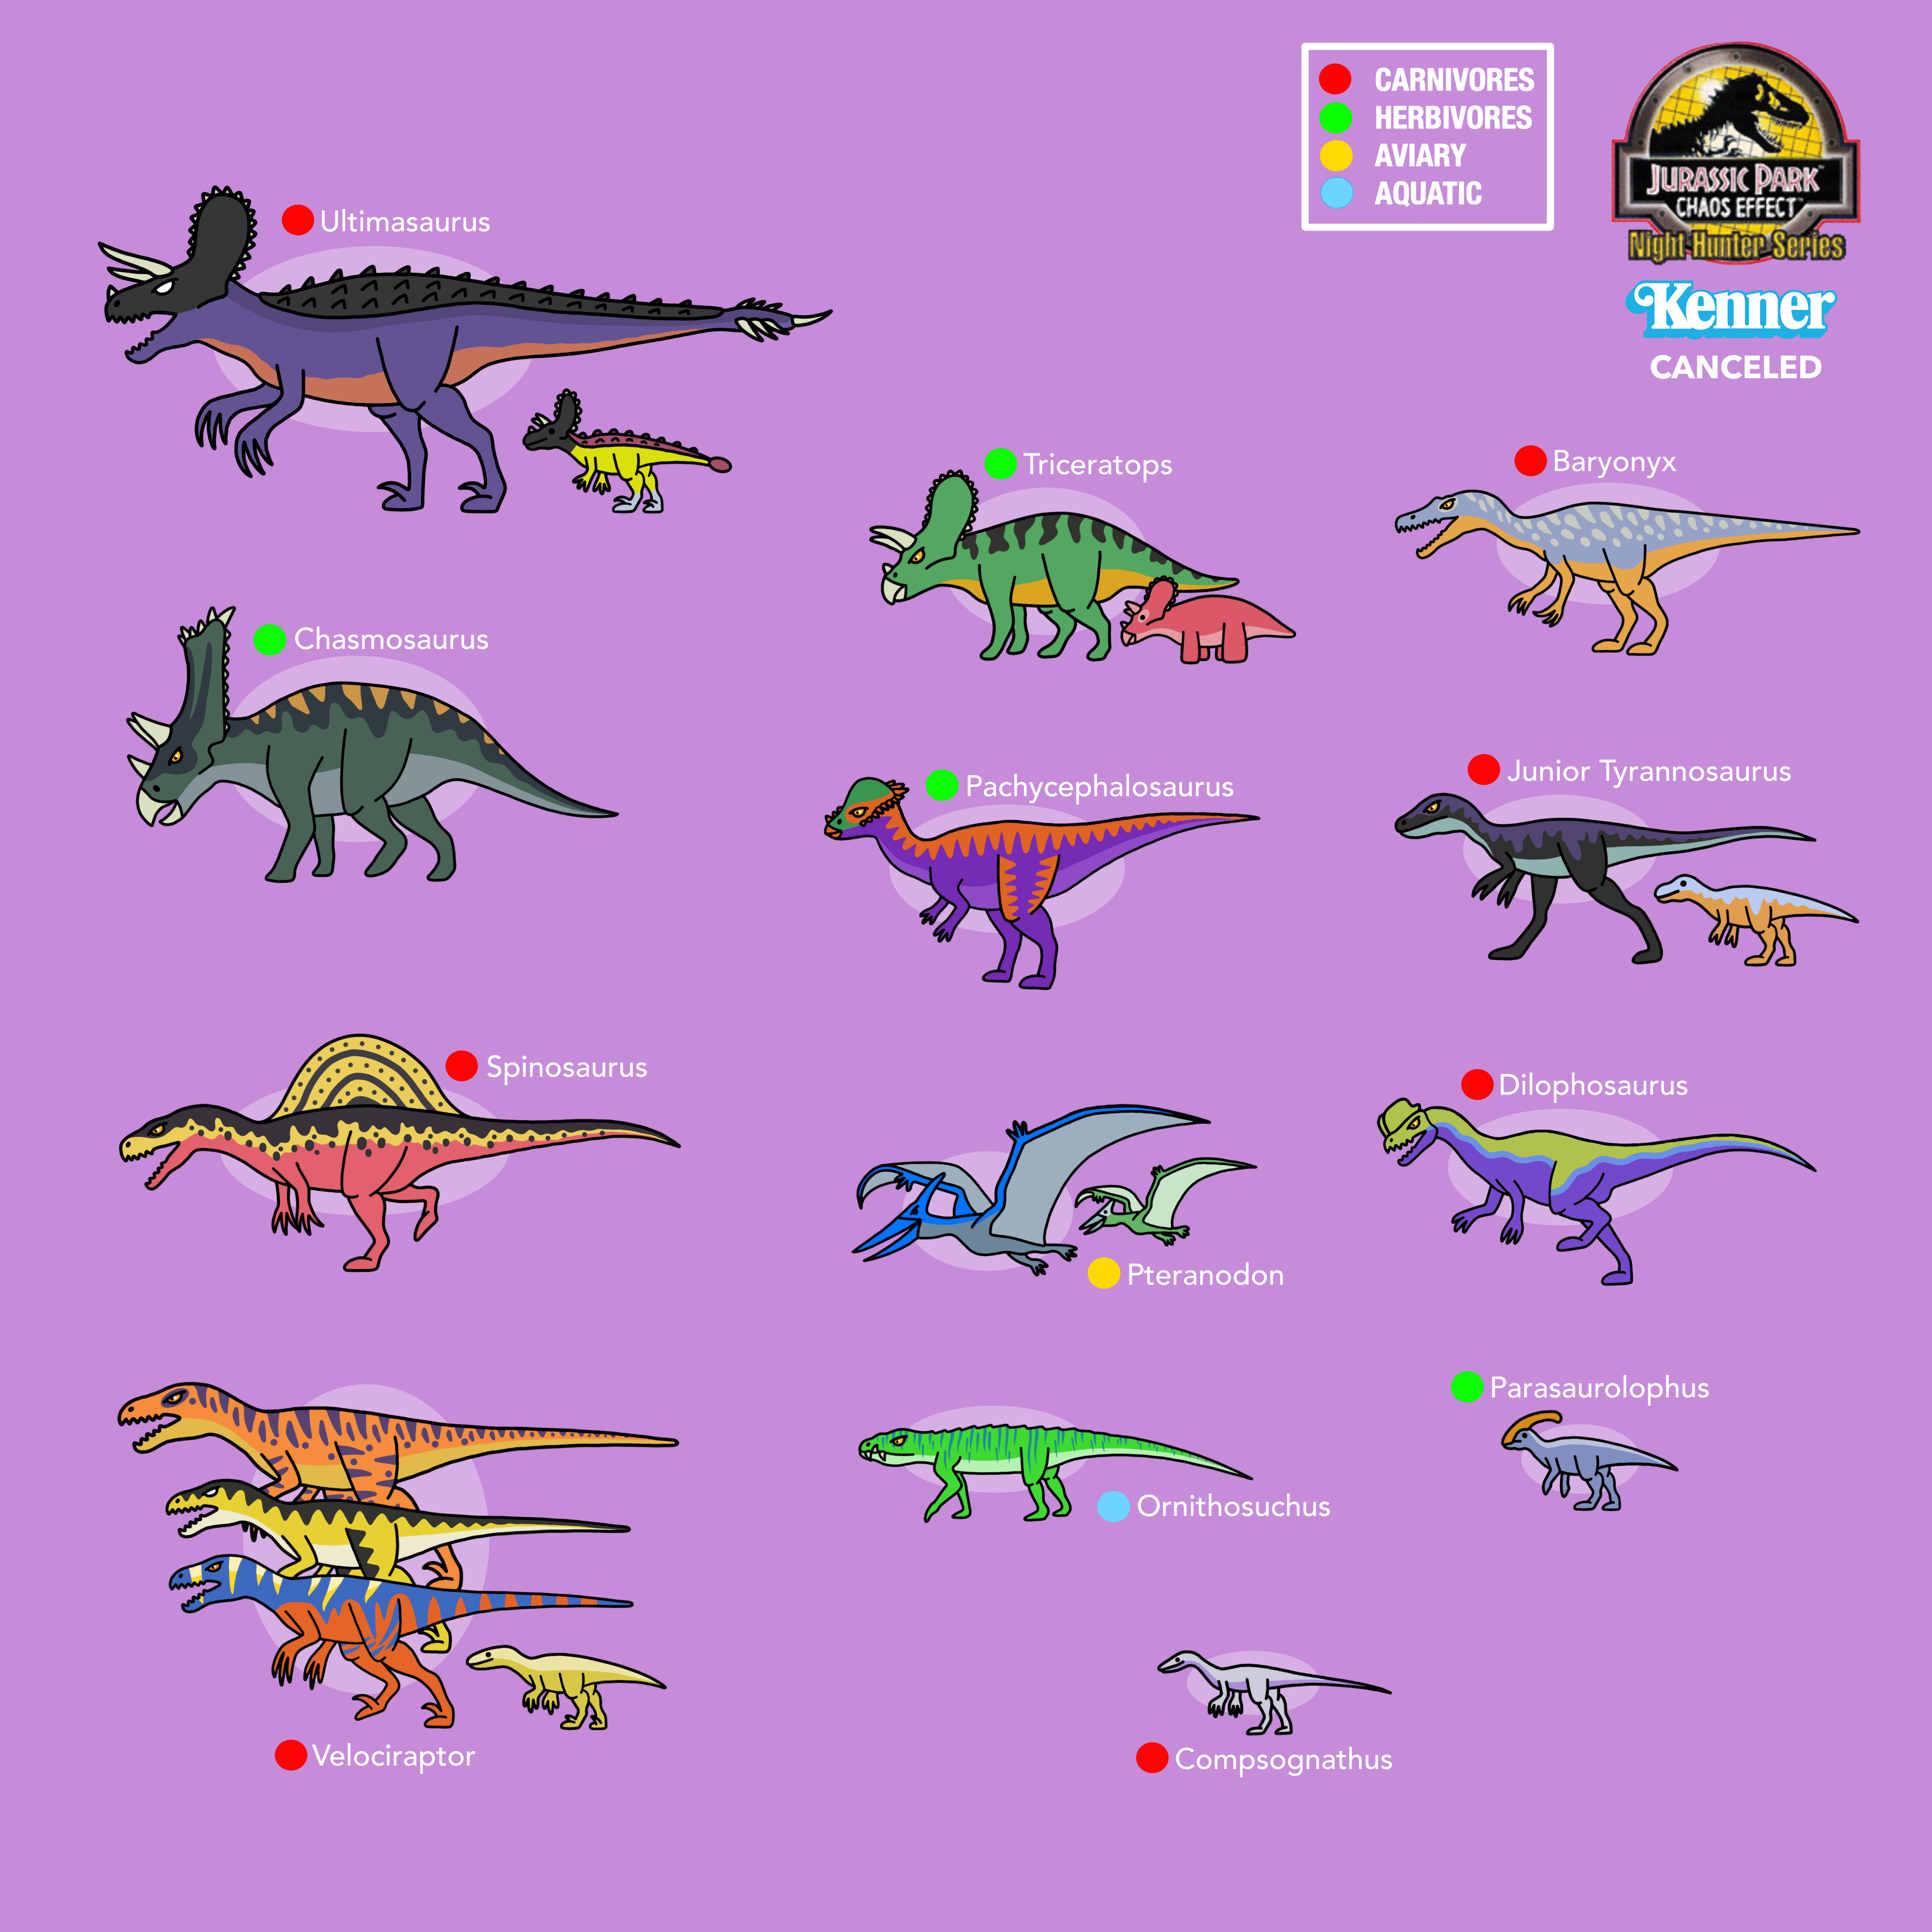 Jurassic Park all dinosaurs by bestomator1111 on DeviantArt